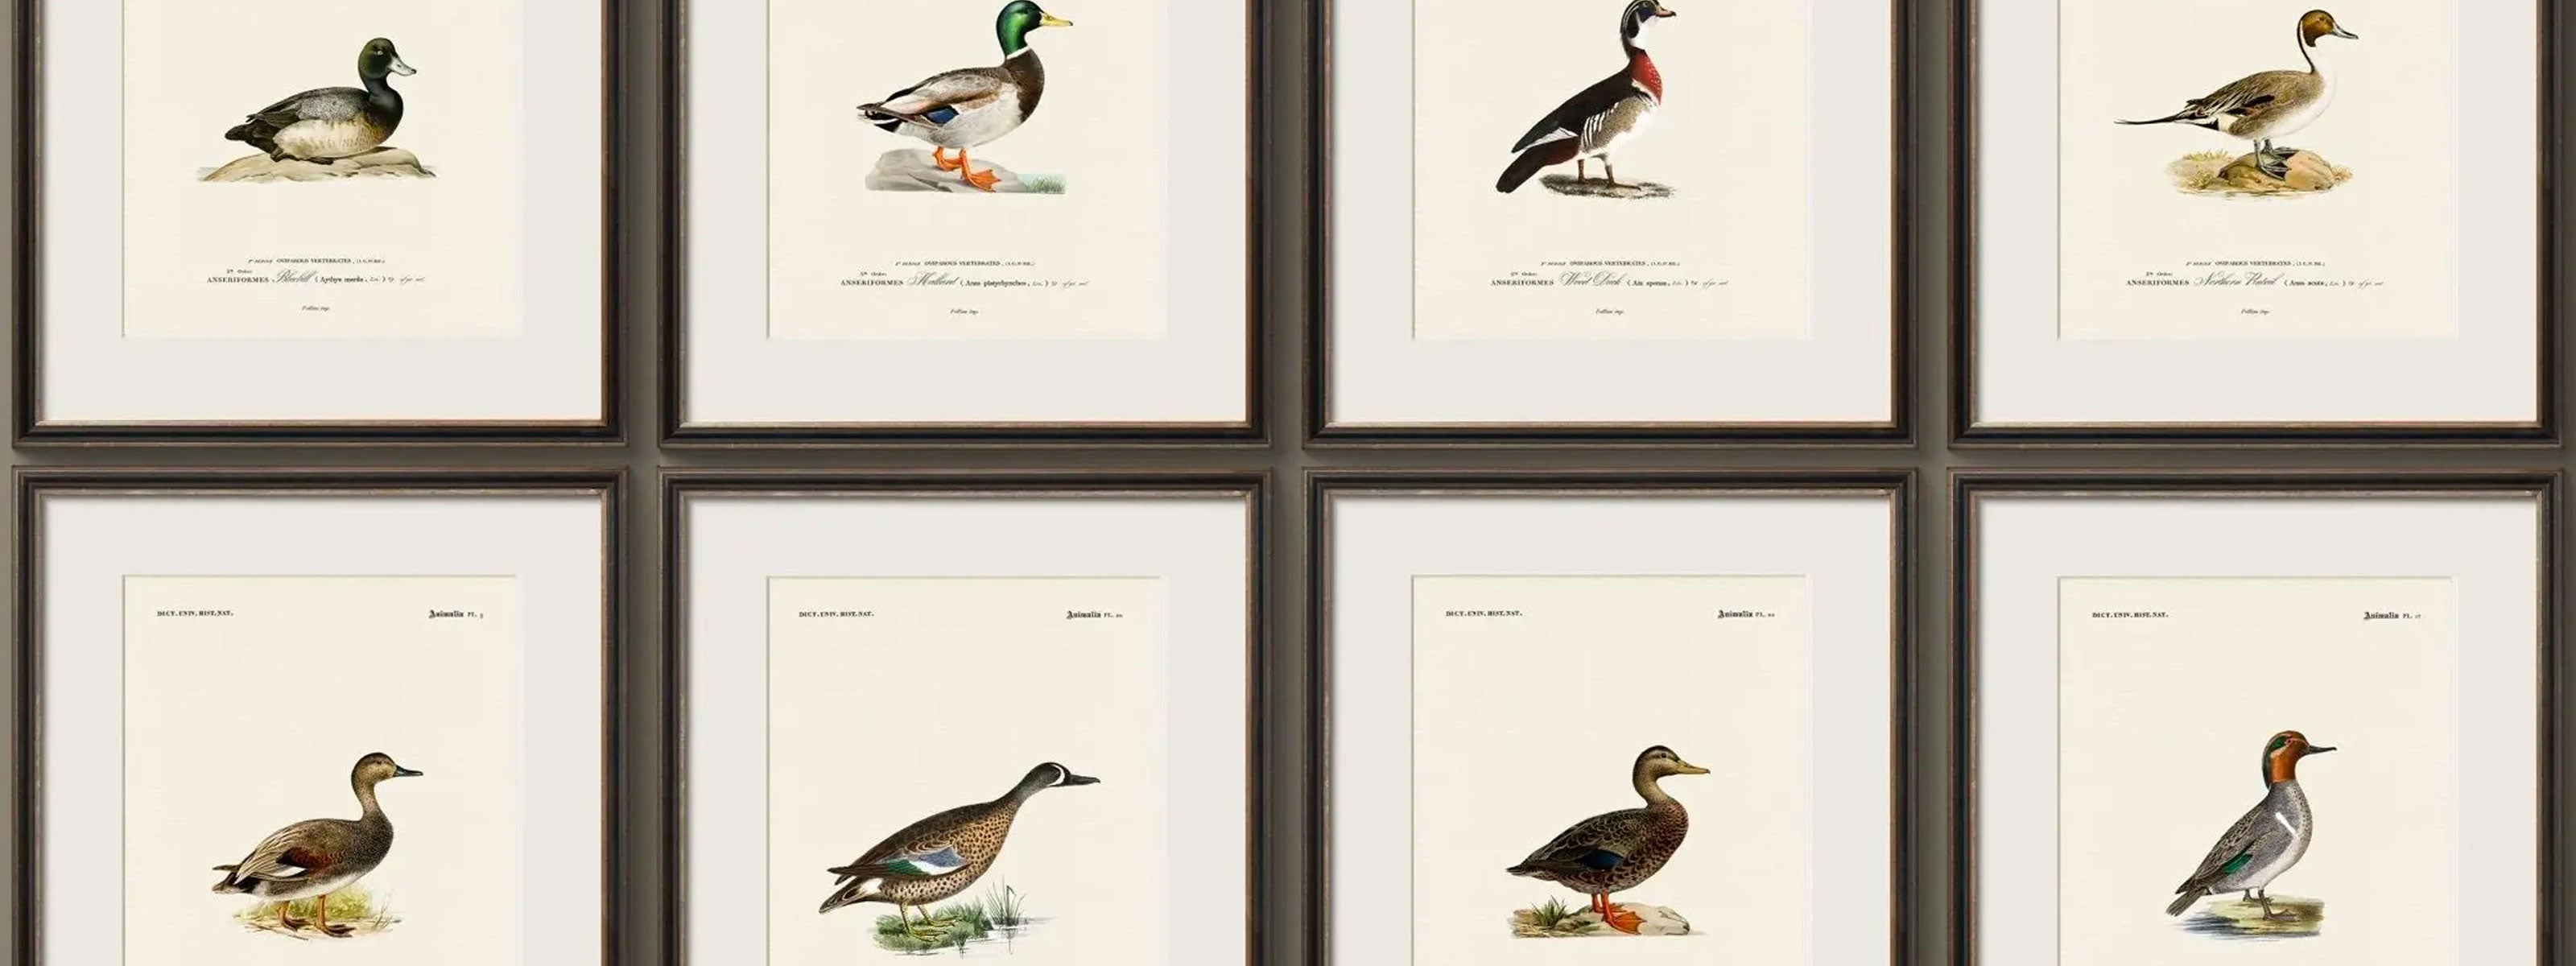 North American Ducks: Vintage Naturalist Illustrations